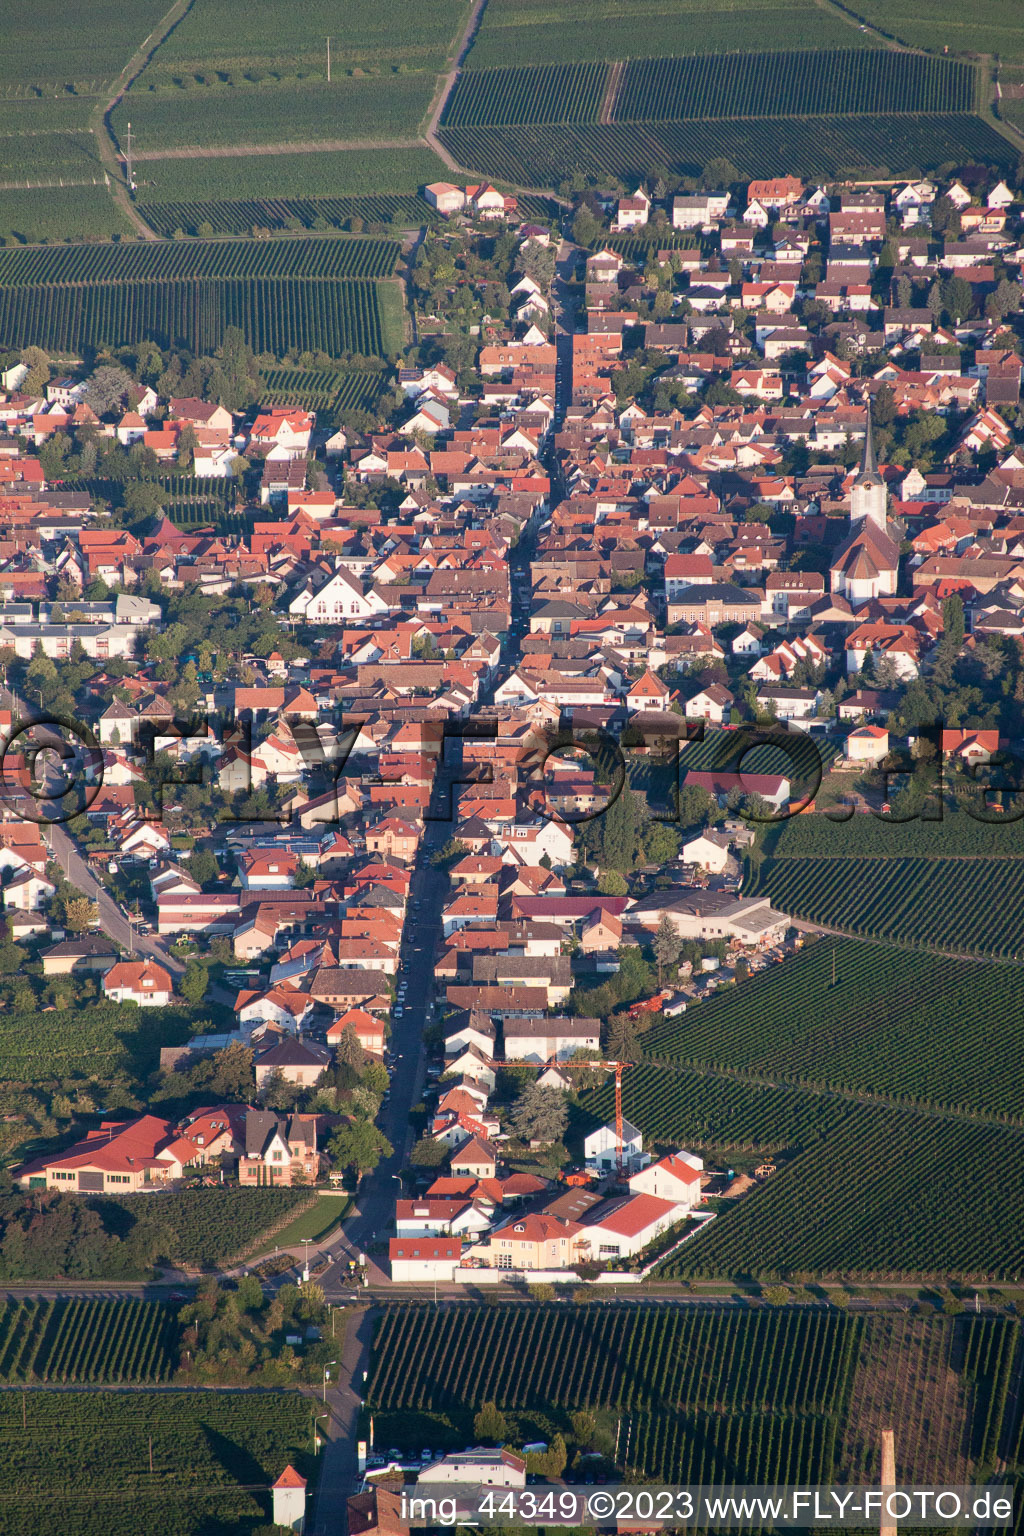 Vue oblique de Maikammer dans le département Rhénanie-Palatinat, Allemagne